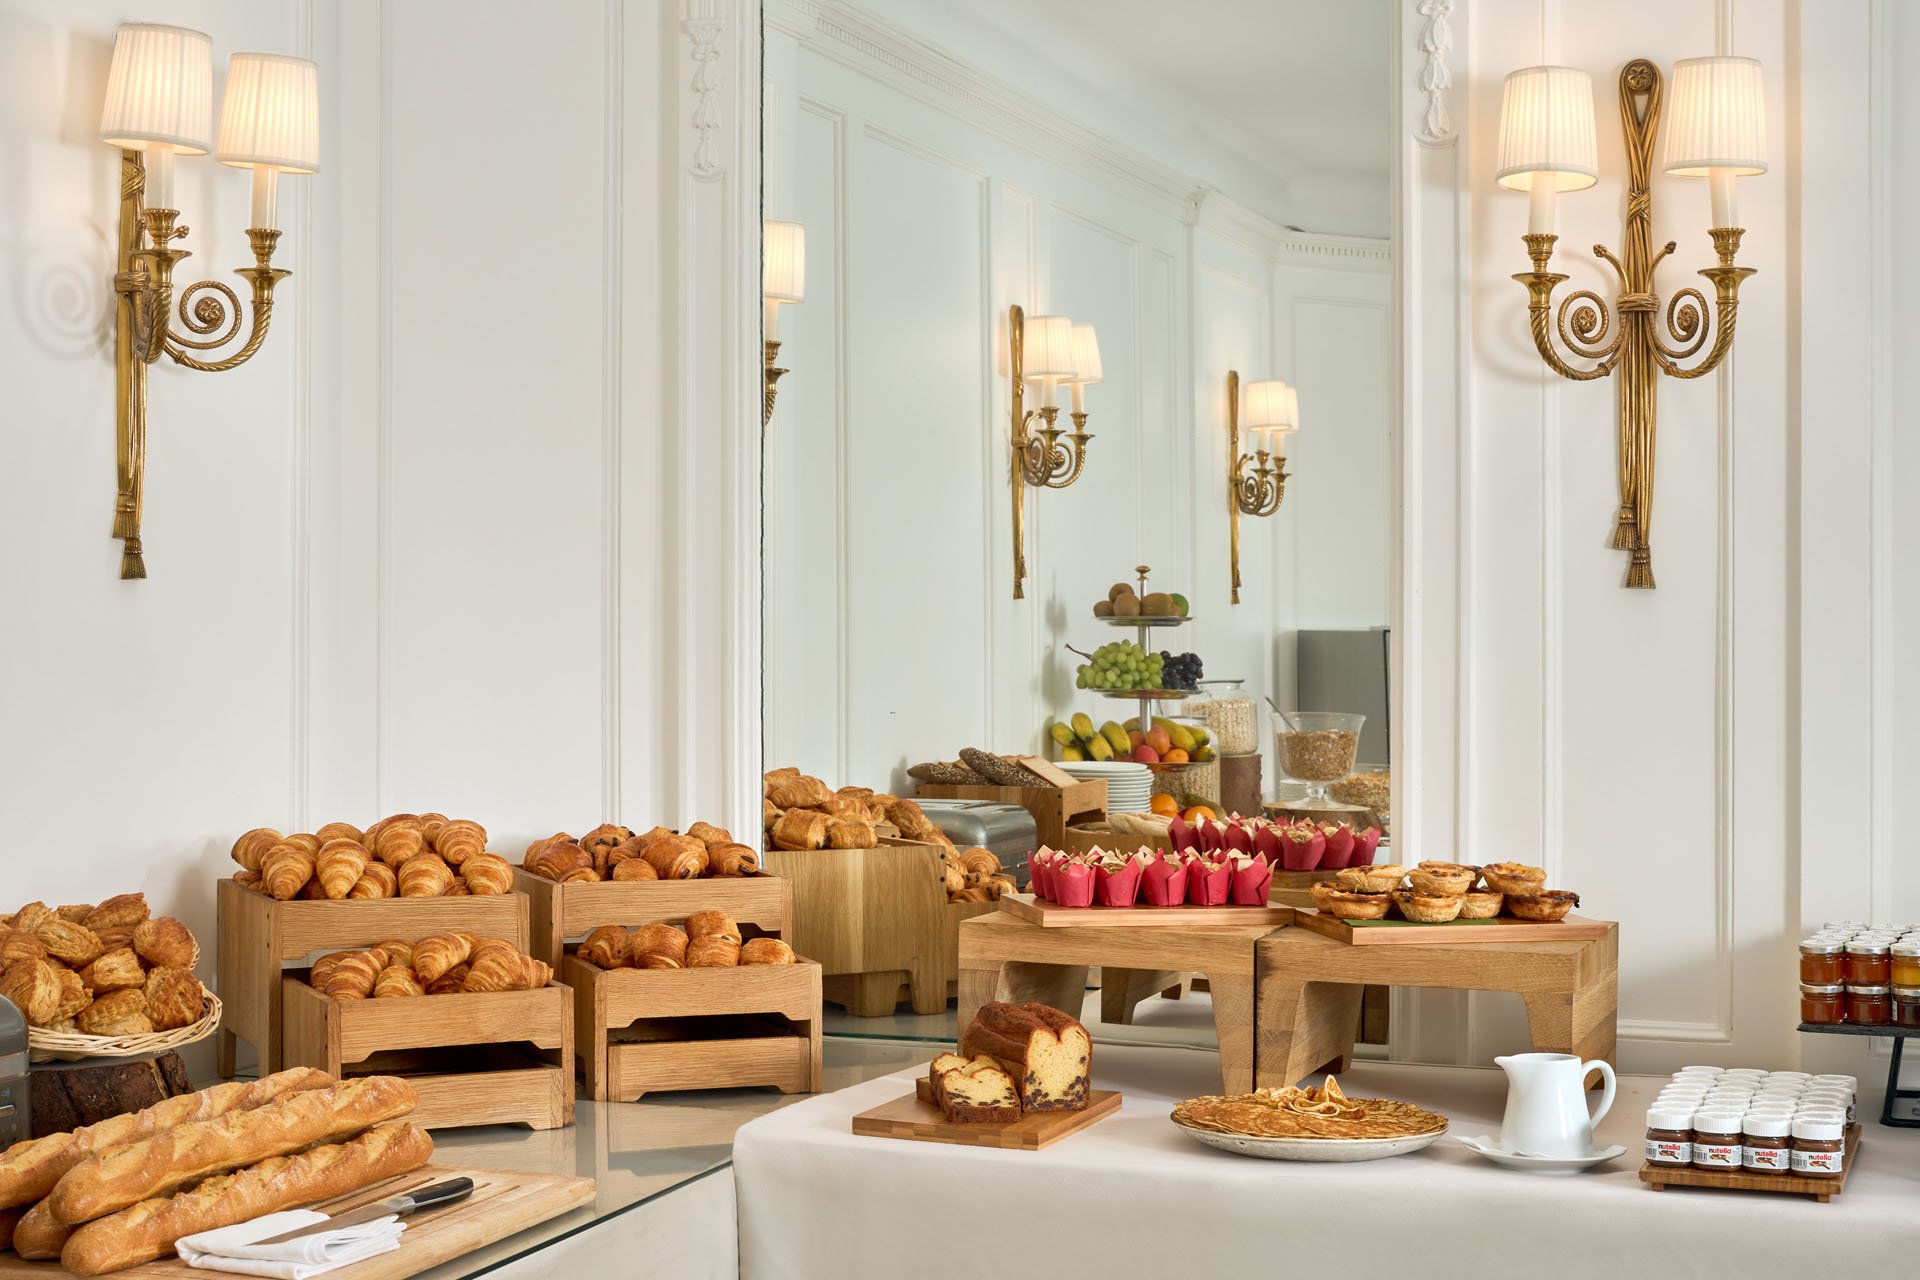 Regina Louvre Hotel - Buffet Breakfast